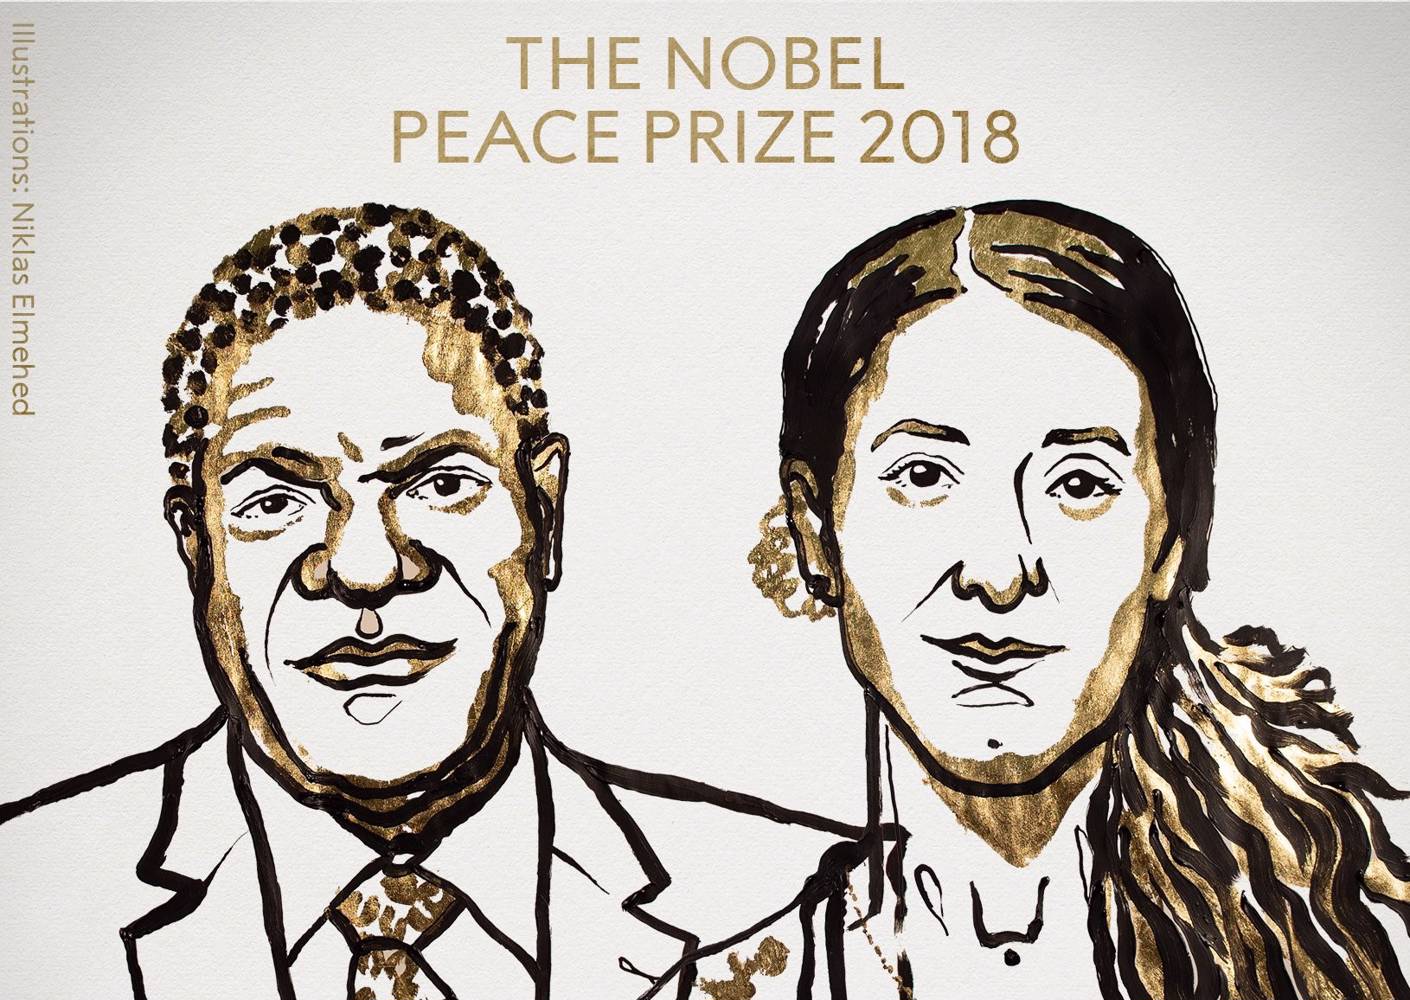  Photo: Niklas Elmehed/Norwegian Nobel Committee